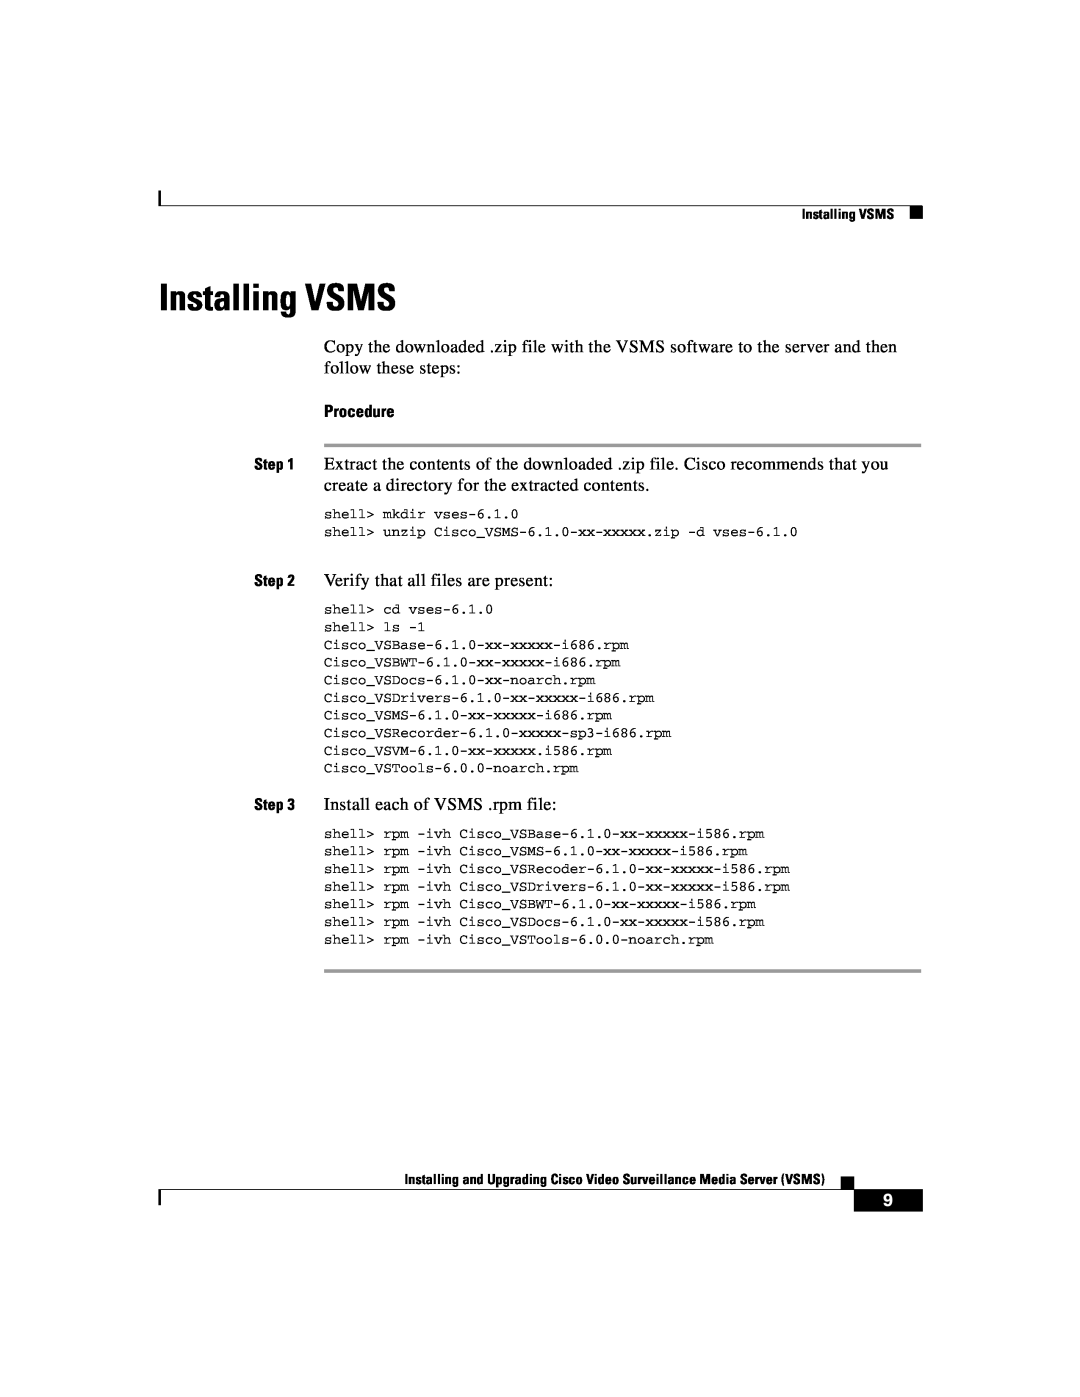 Cisco Systems Surveillance Media Server manual Installing VSMS, Procedure, shell mkdir vses-6.1.0 